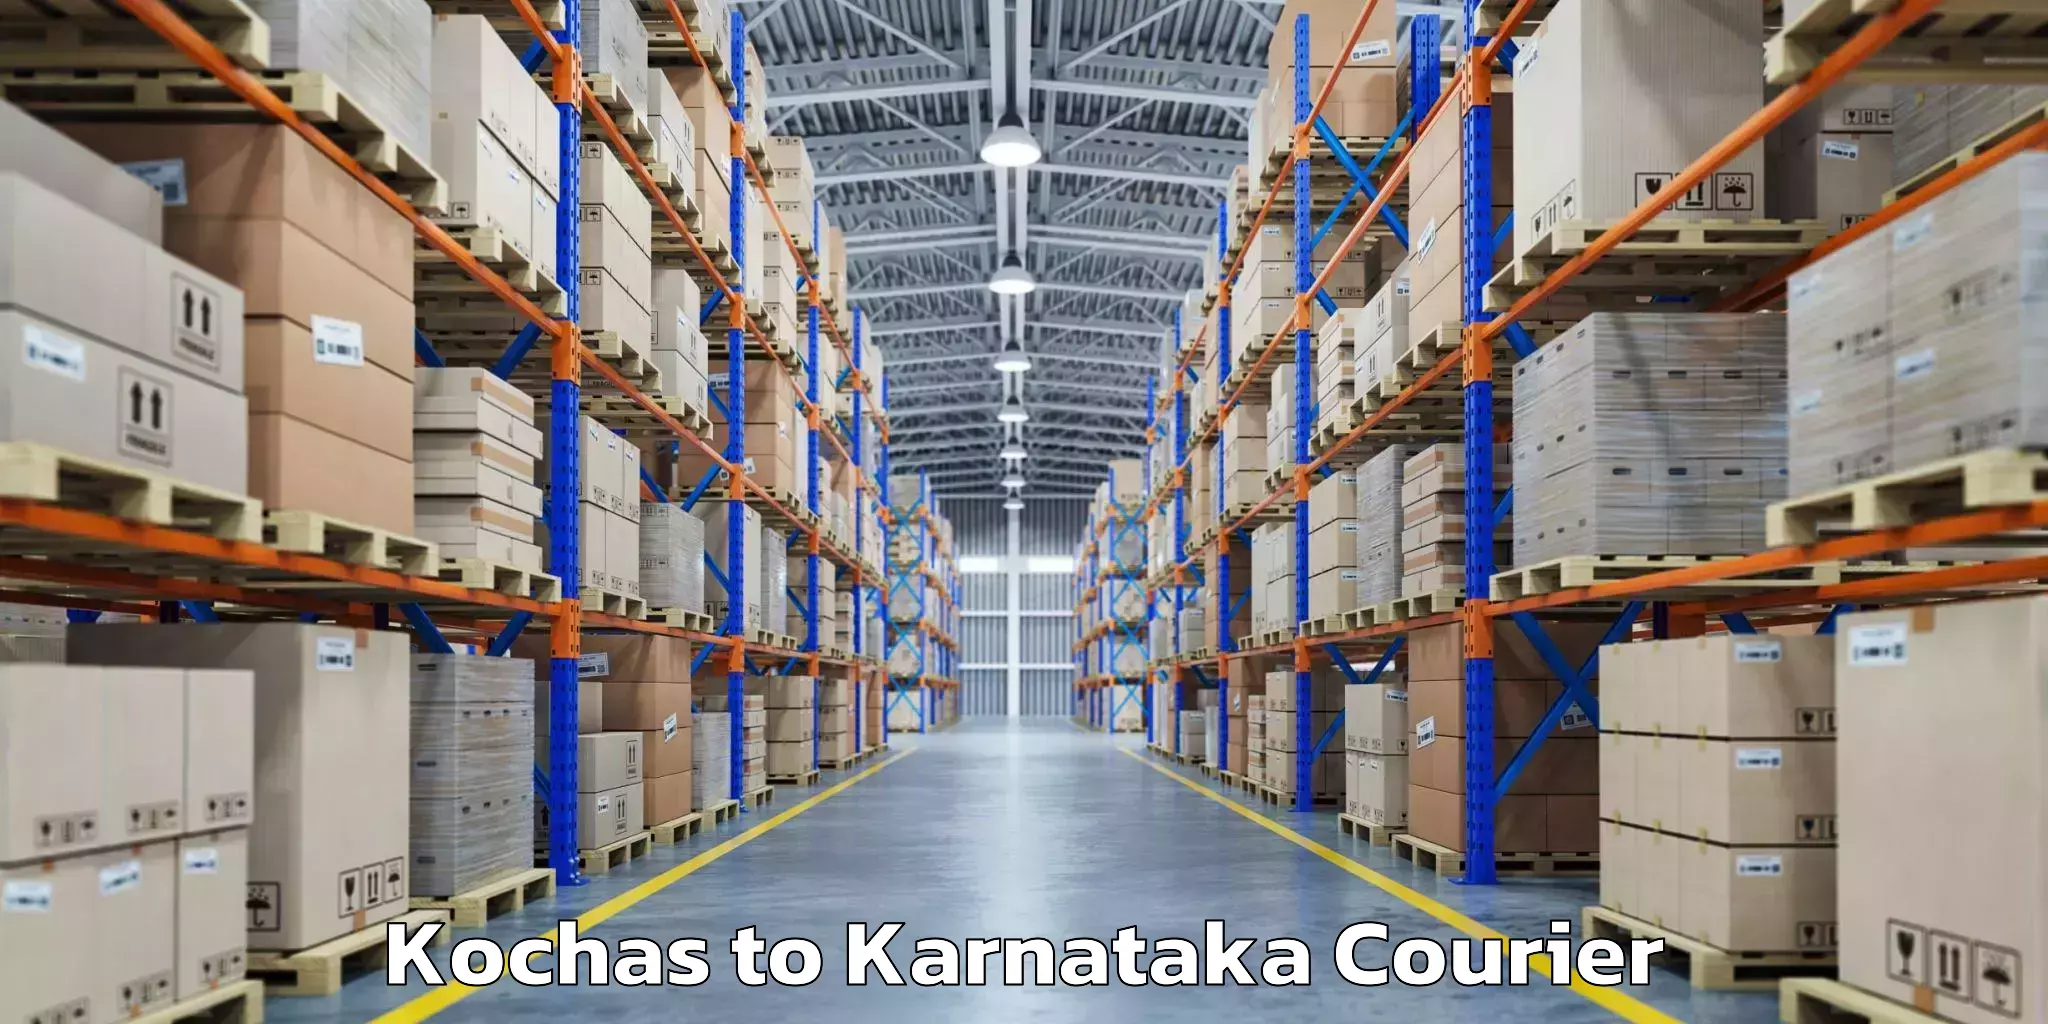 Baggage transport estimate Kochas to Karnataka